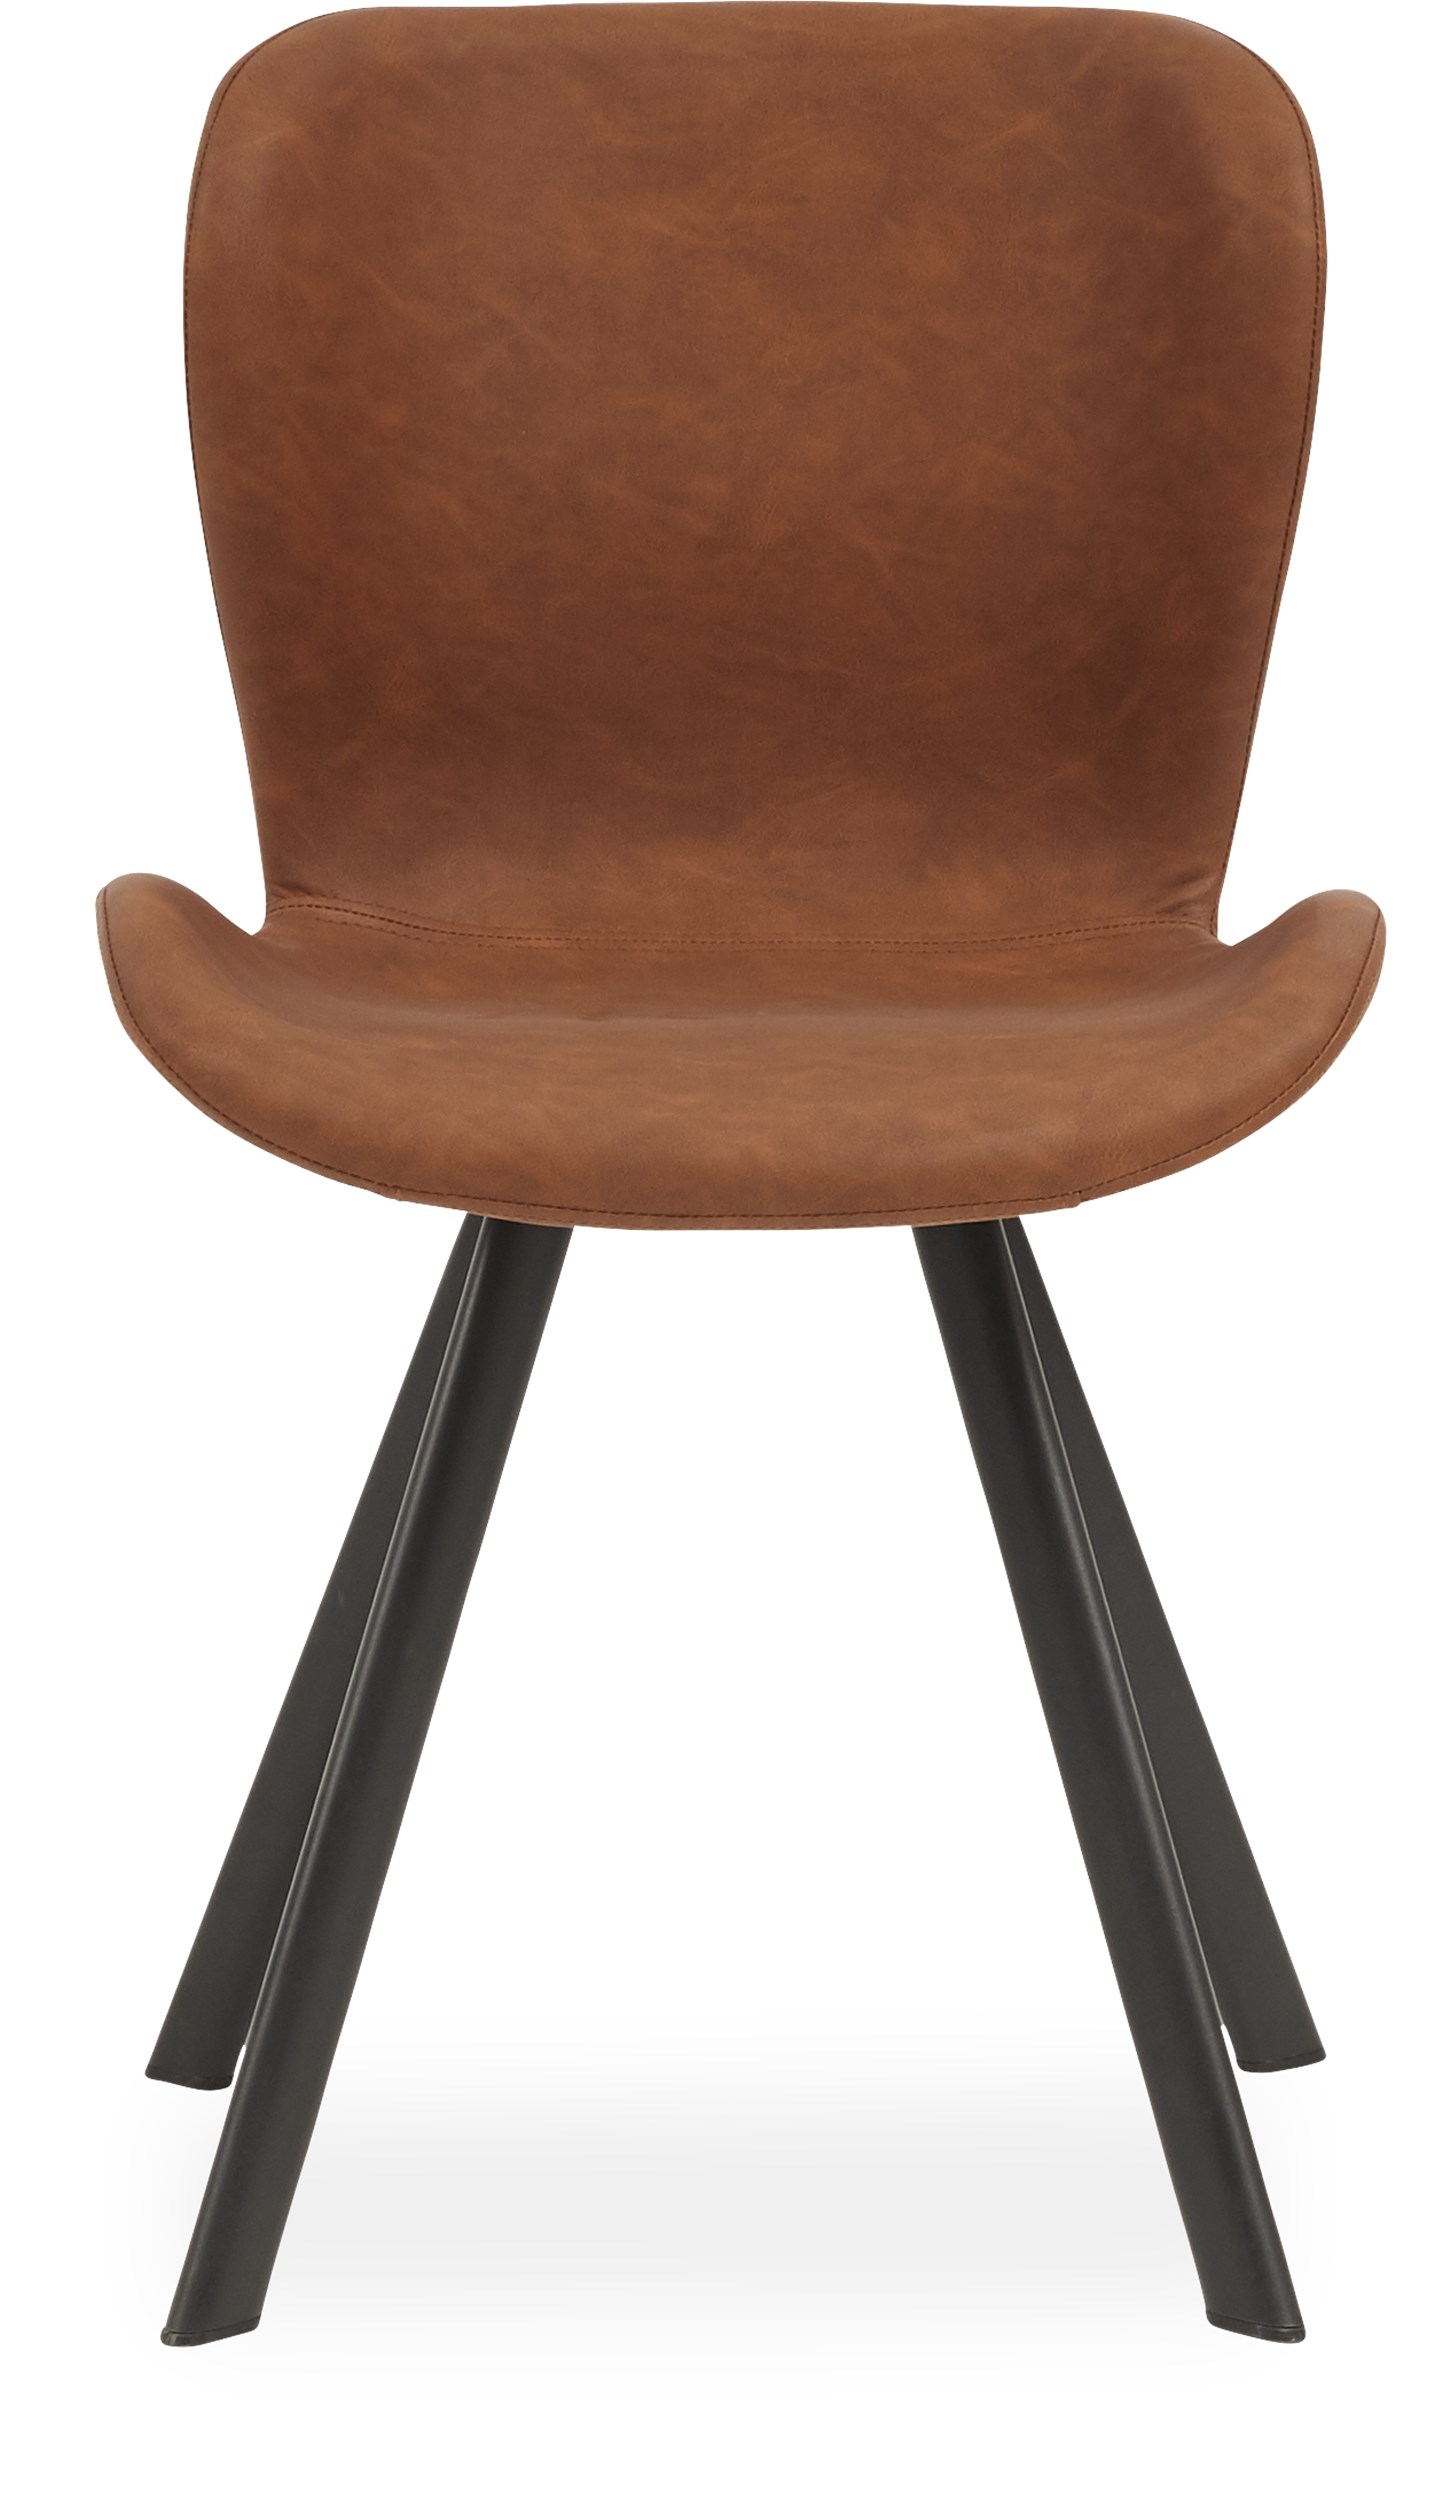 Ally Spisebordsstol - cognacfarvet kunstlæder og ben i sort pulverlakeret metal